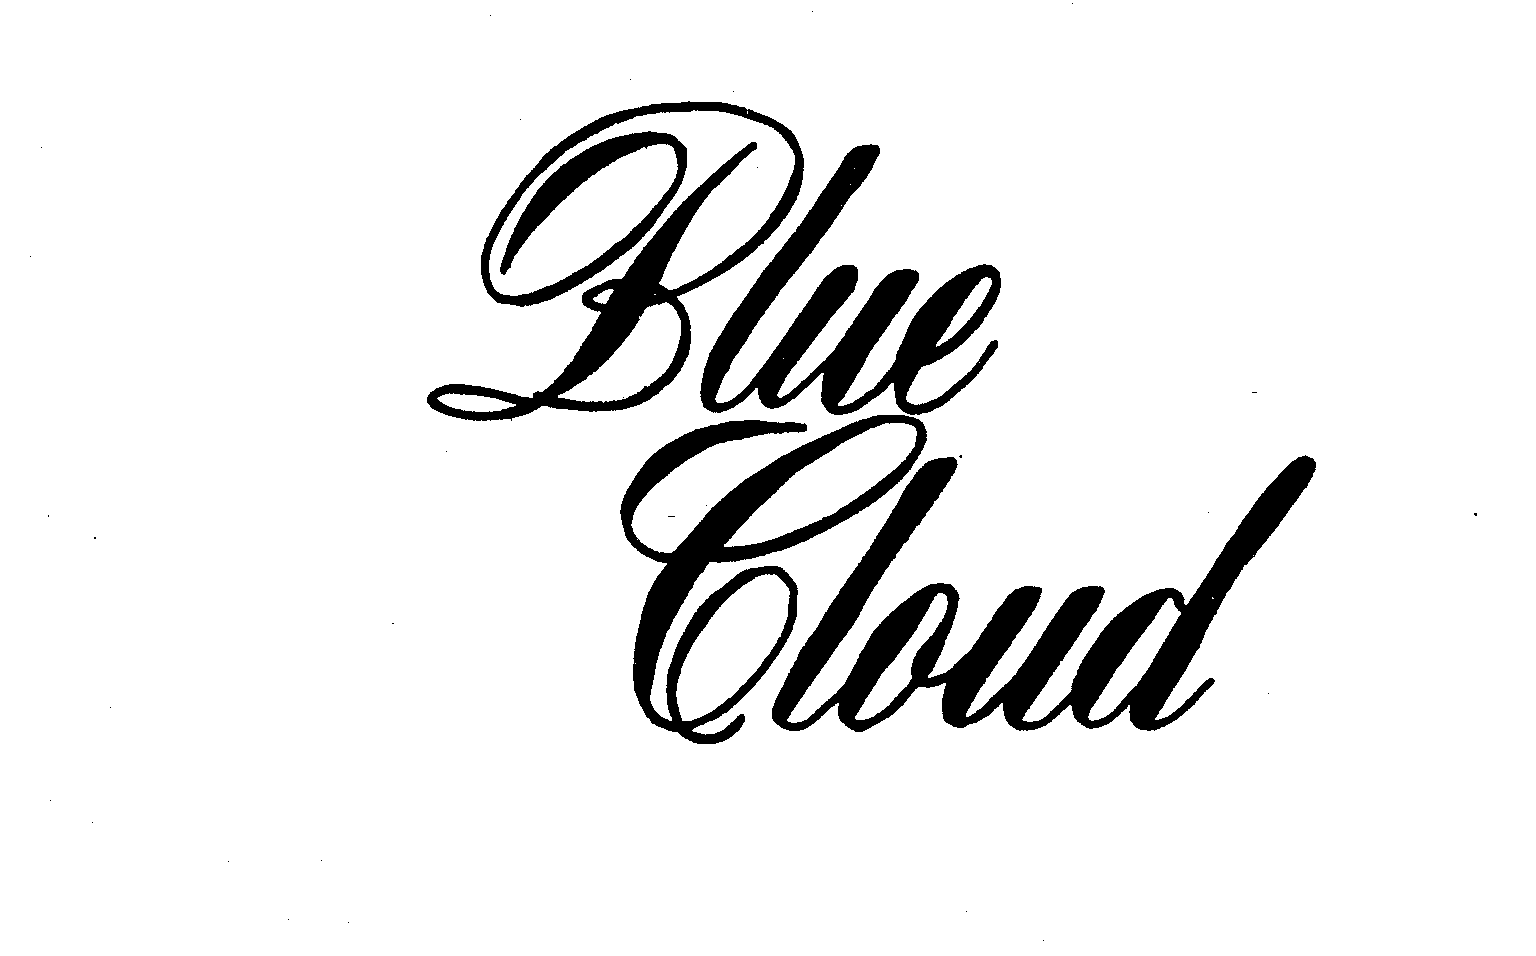 BLUE CLOUD